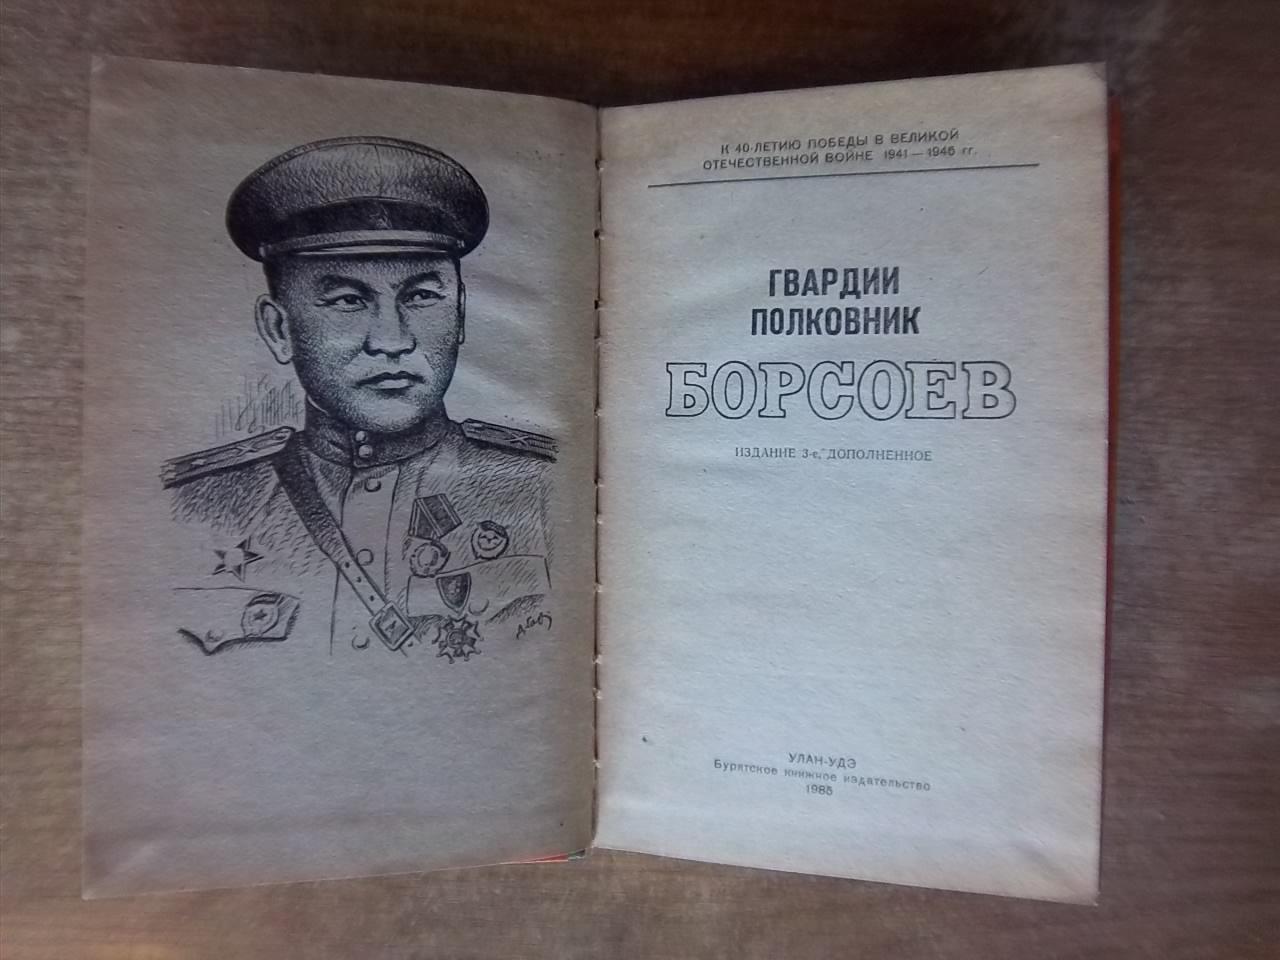 Гвардии полковник Борсоев. Сборник. 1